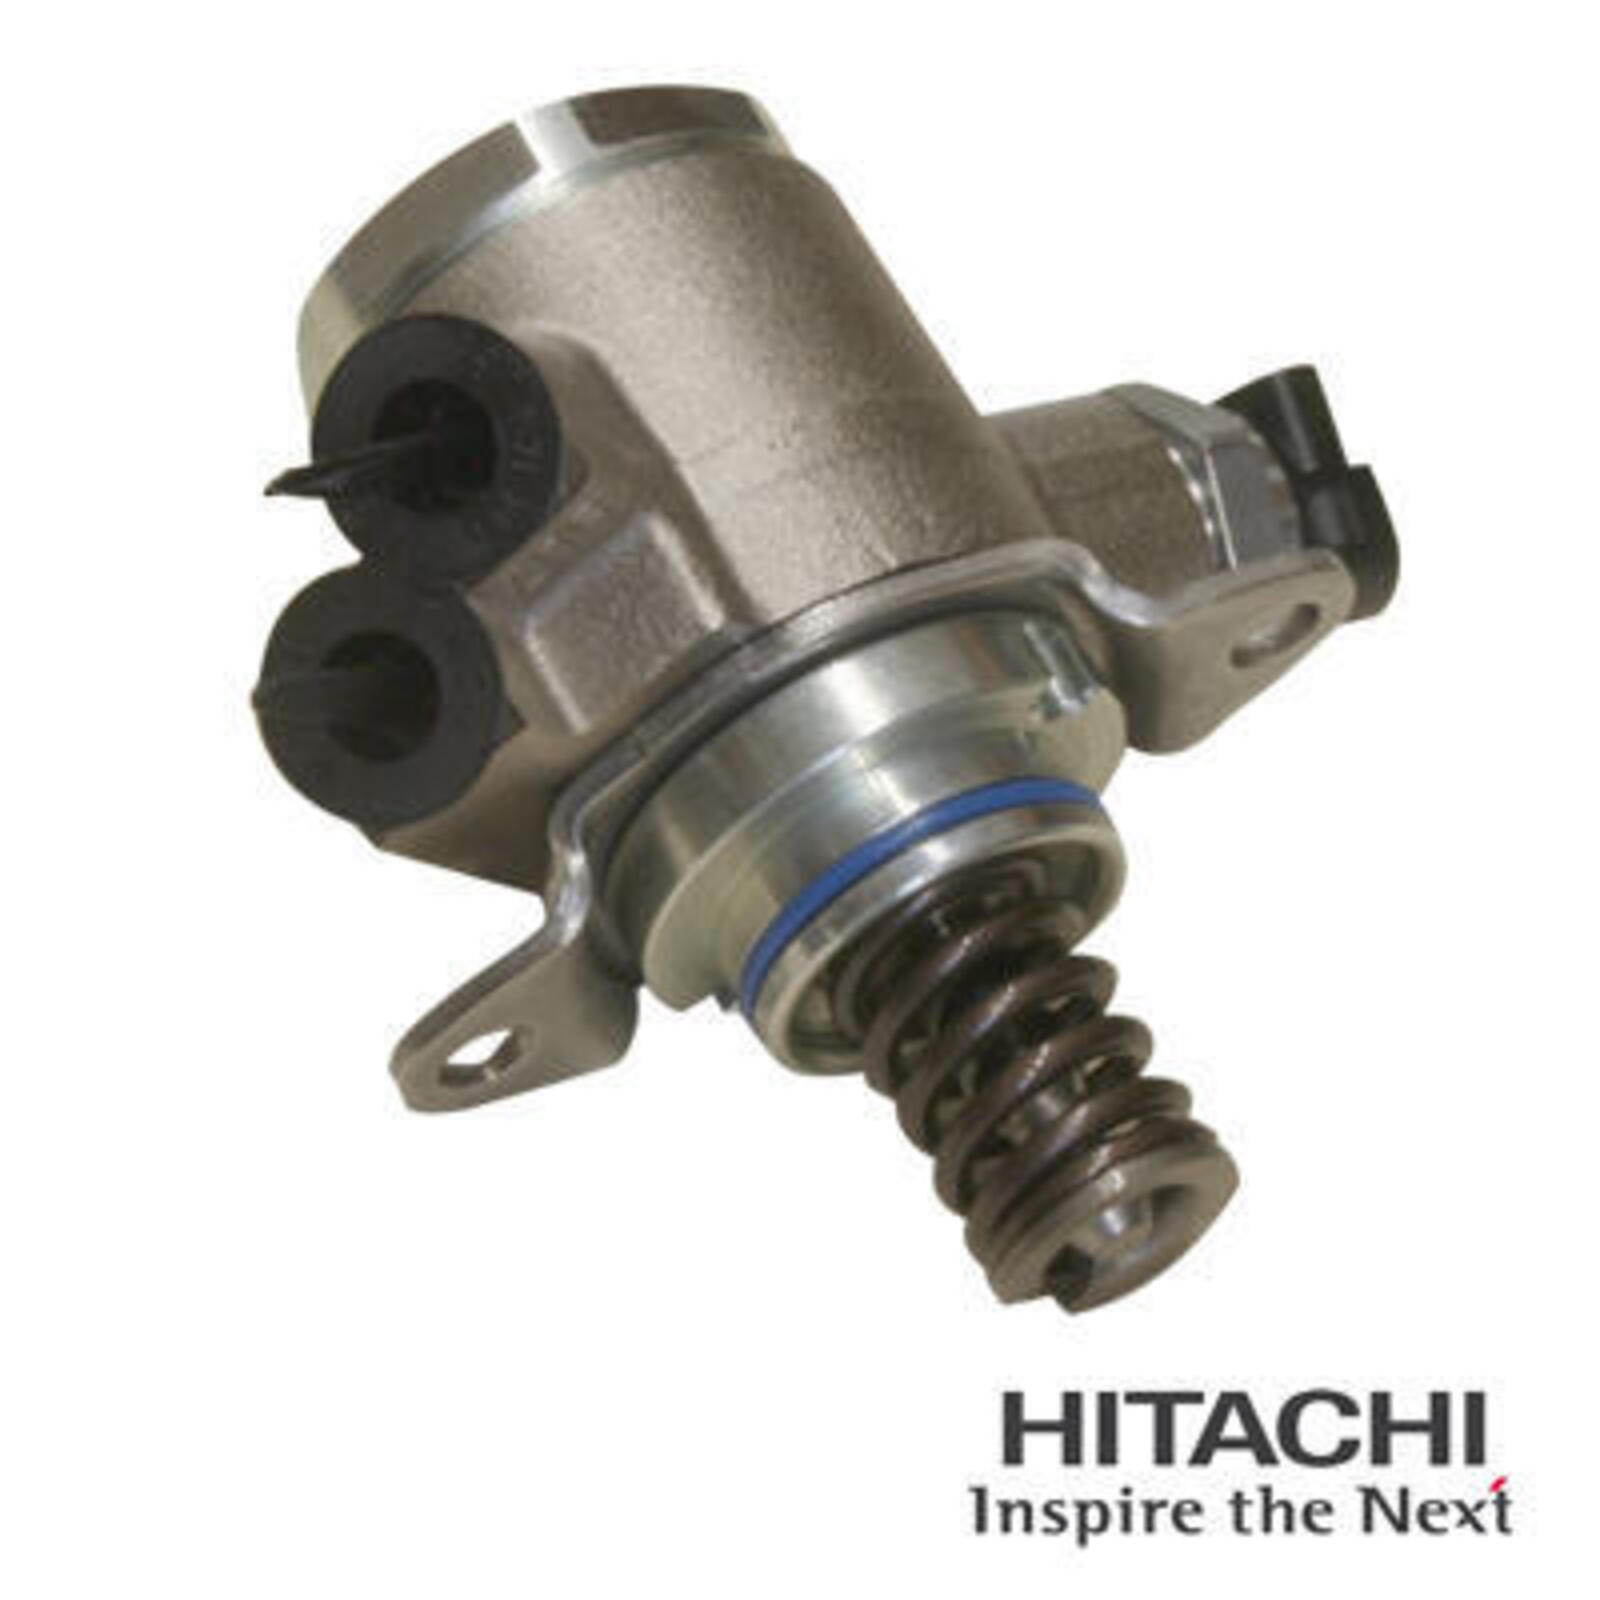 HITACHI High Pressure Pump